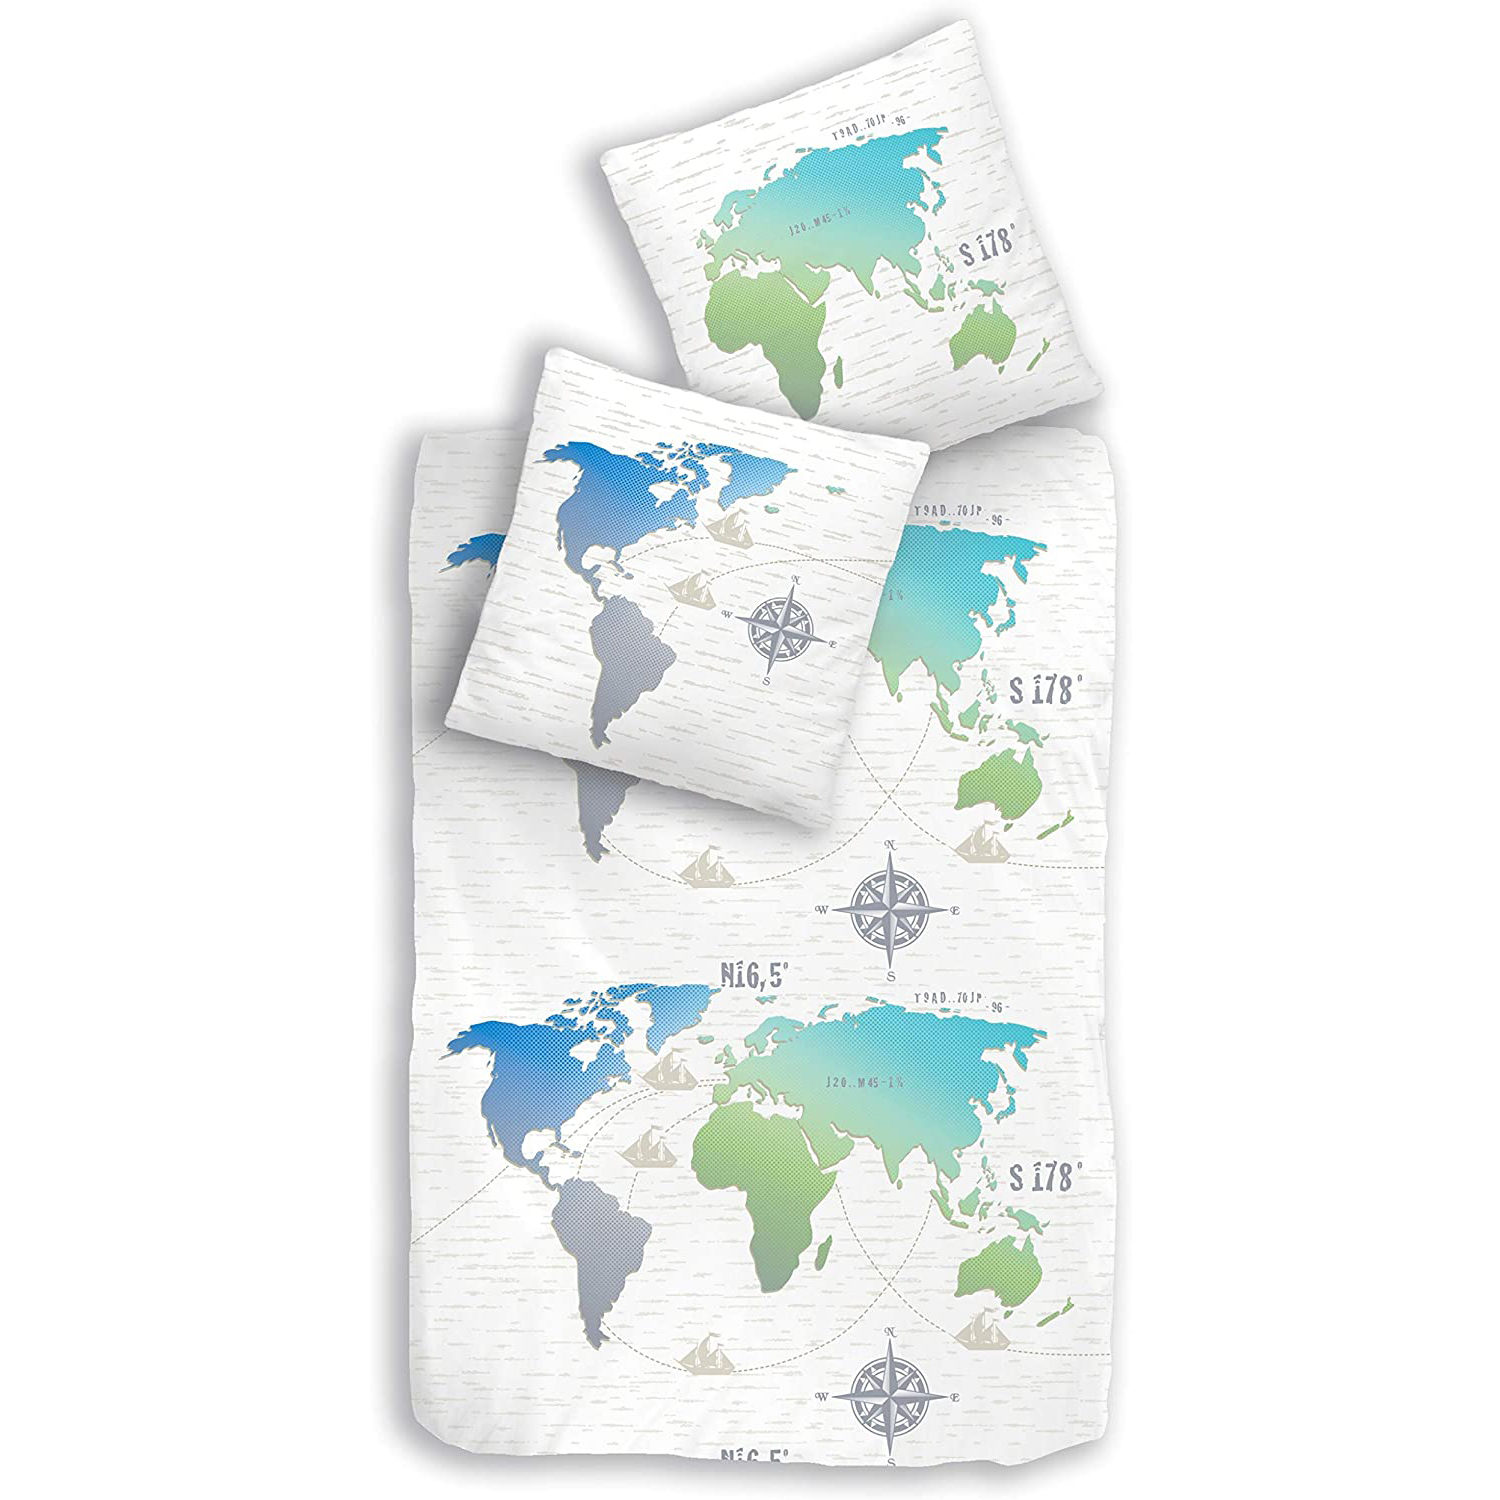 Globus-Liebe: Weihnachtsgeschenke für Reisefans im Weltkarten- und Globus-Look 